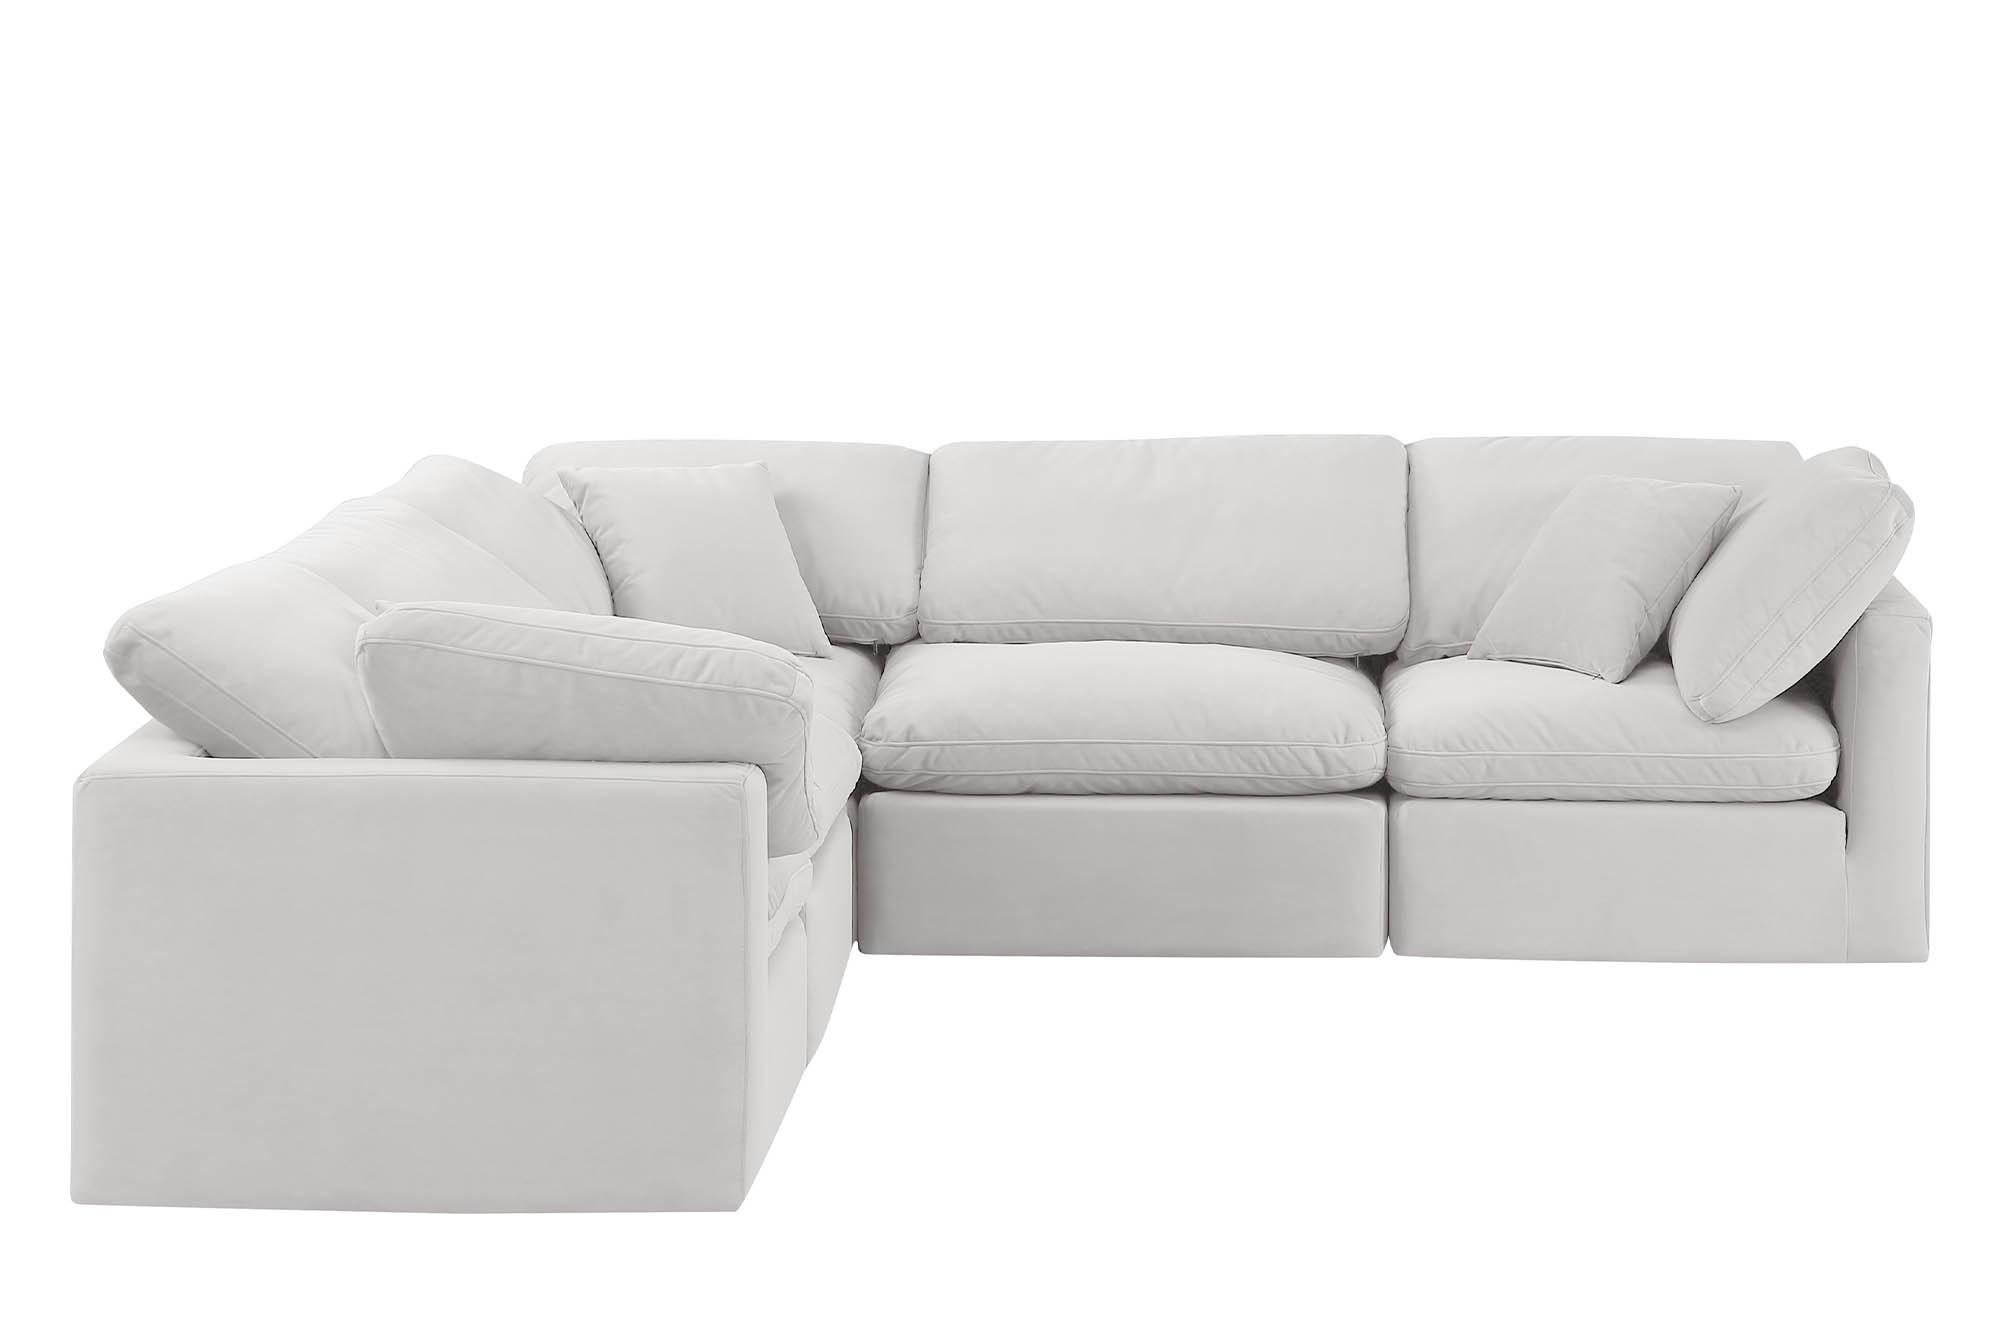 

    
Meridian Furniture INDULGE 147Cream-Sec5C Modular Sectional Sofa Cream 147Cream-Sec5C
